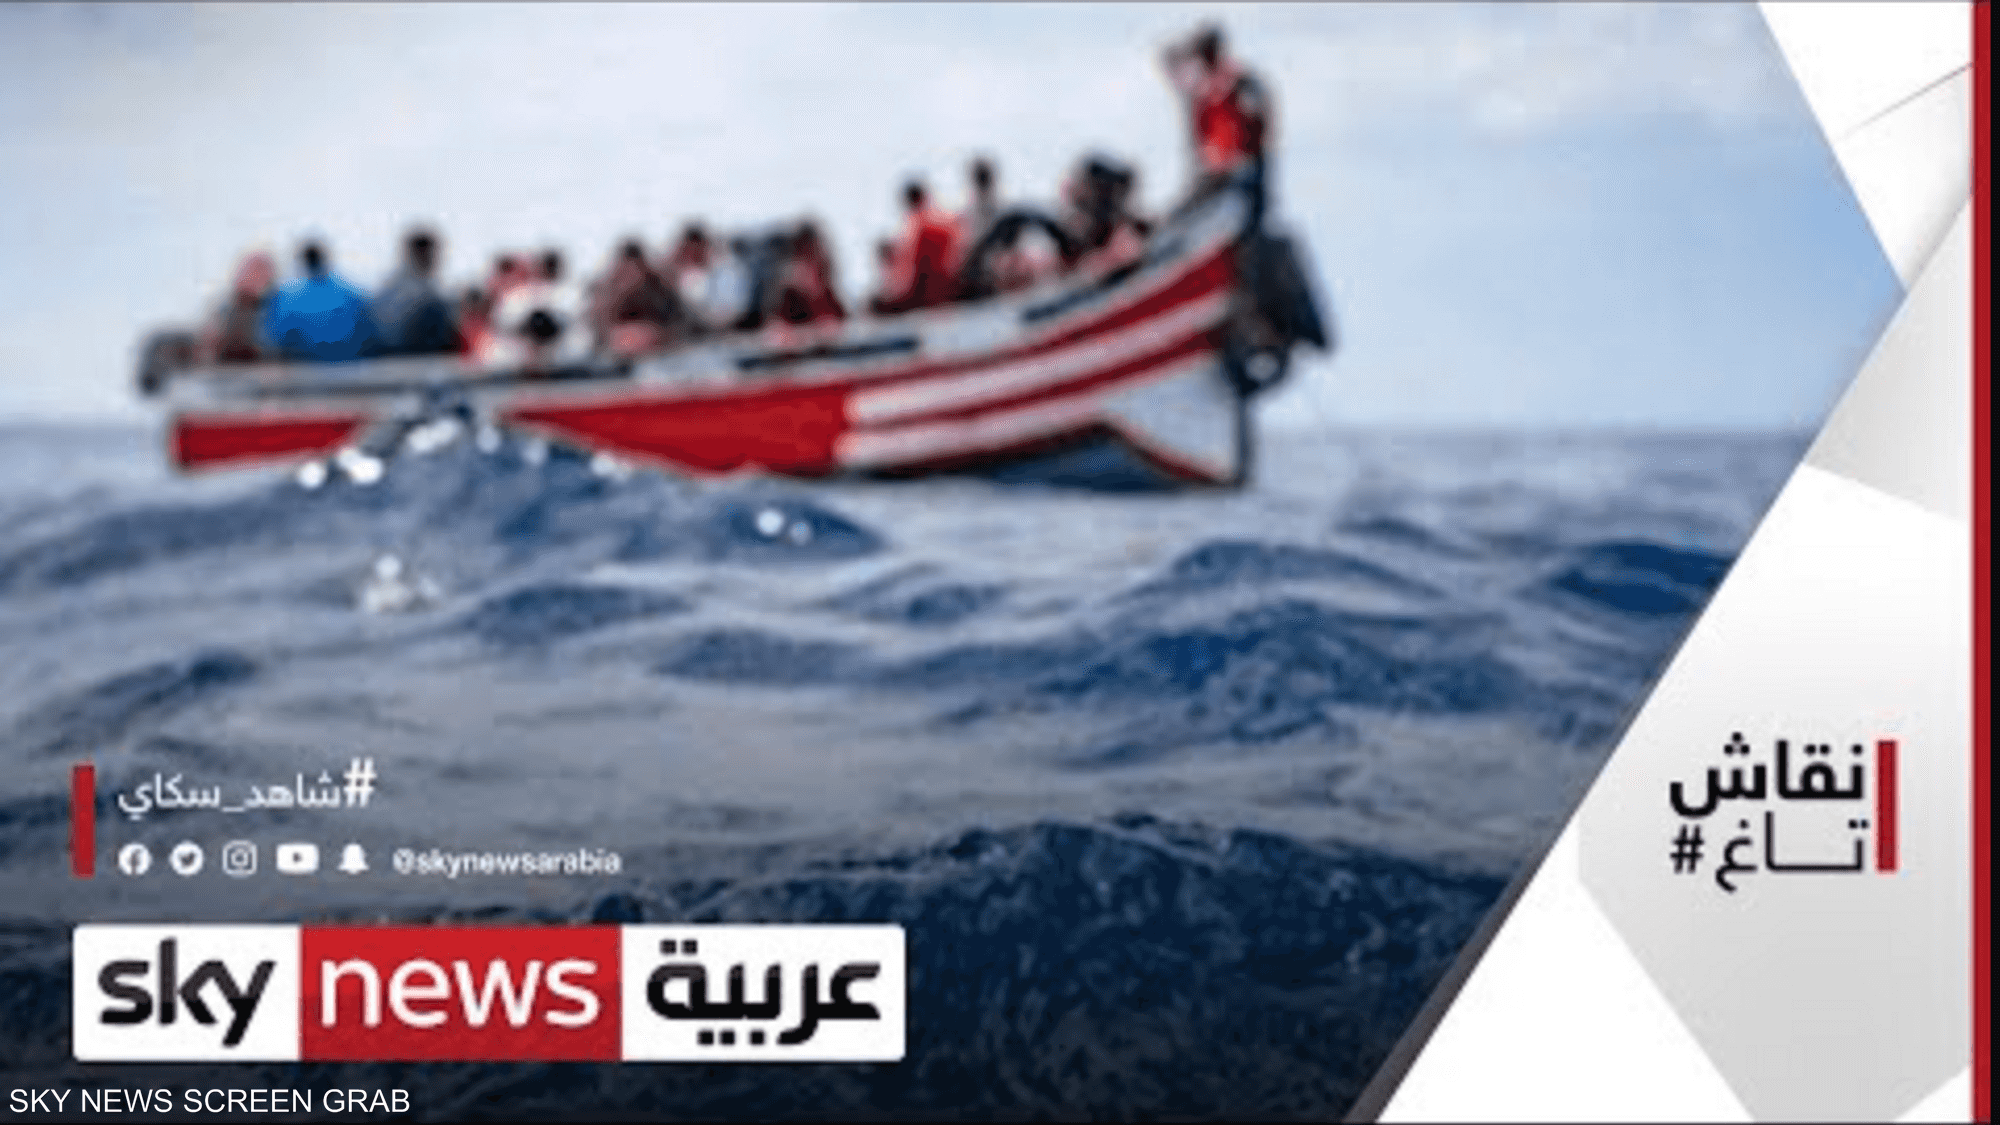 الهجرة غير الشرعية تعود للواجهة بعد غرق قارب سواحل لبنان